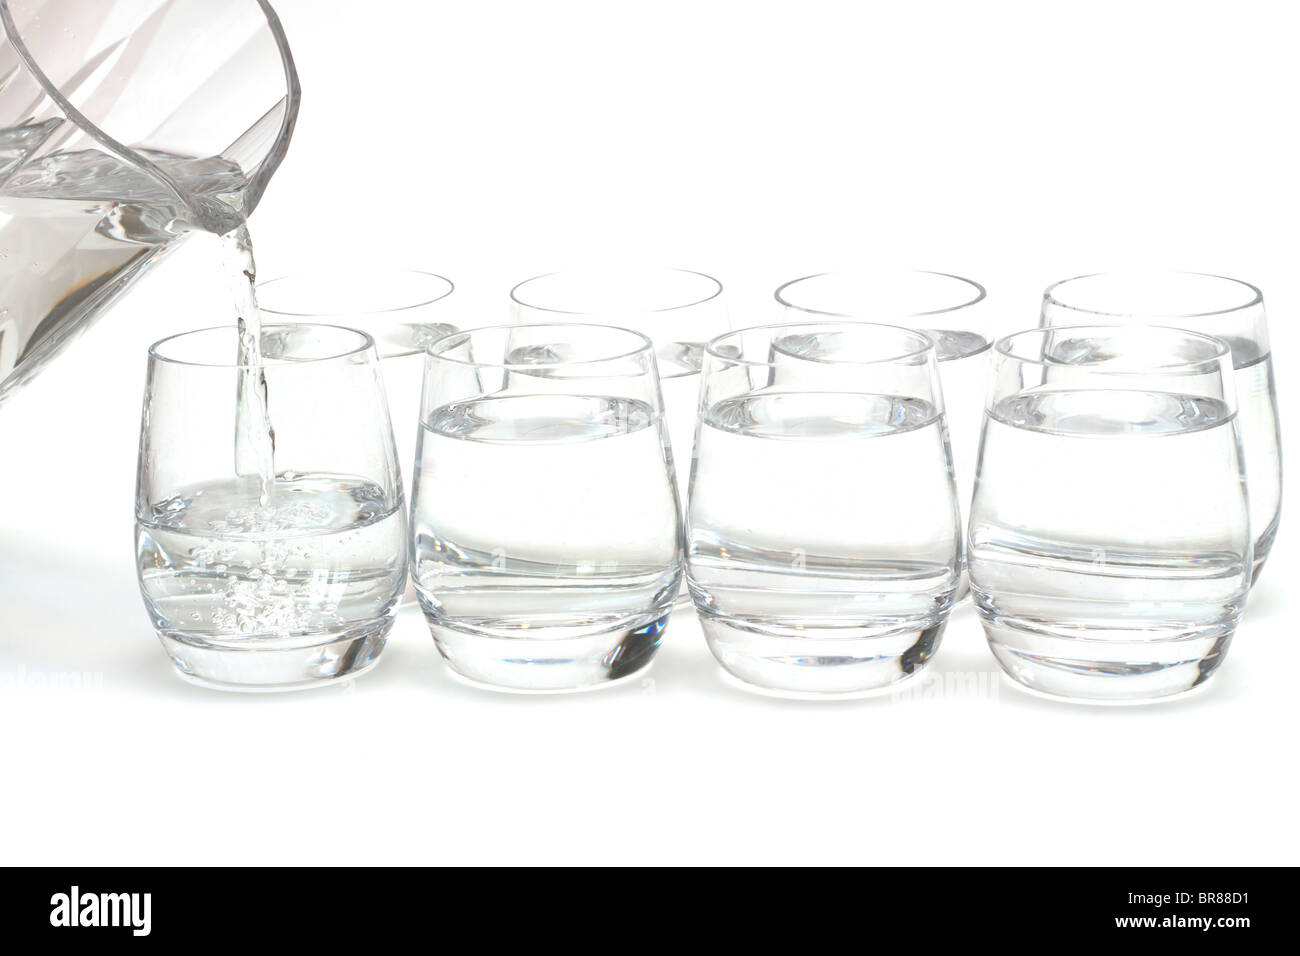 Acht Gläser Wasser. Konzeptbild illustrieren die gesunde Anforderung 8 Gläser Wasser pro Tag trinken Stockfoto